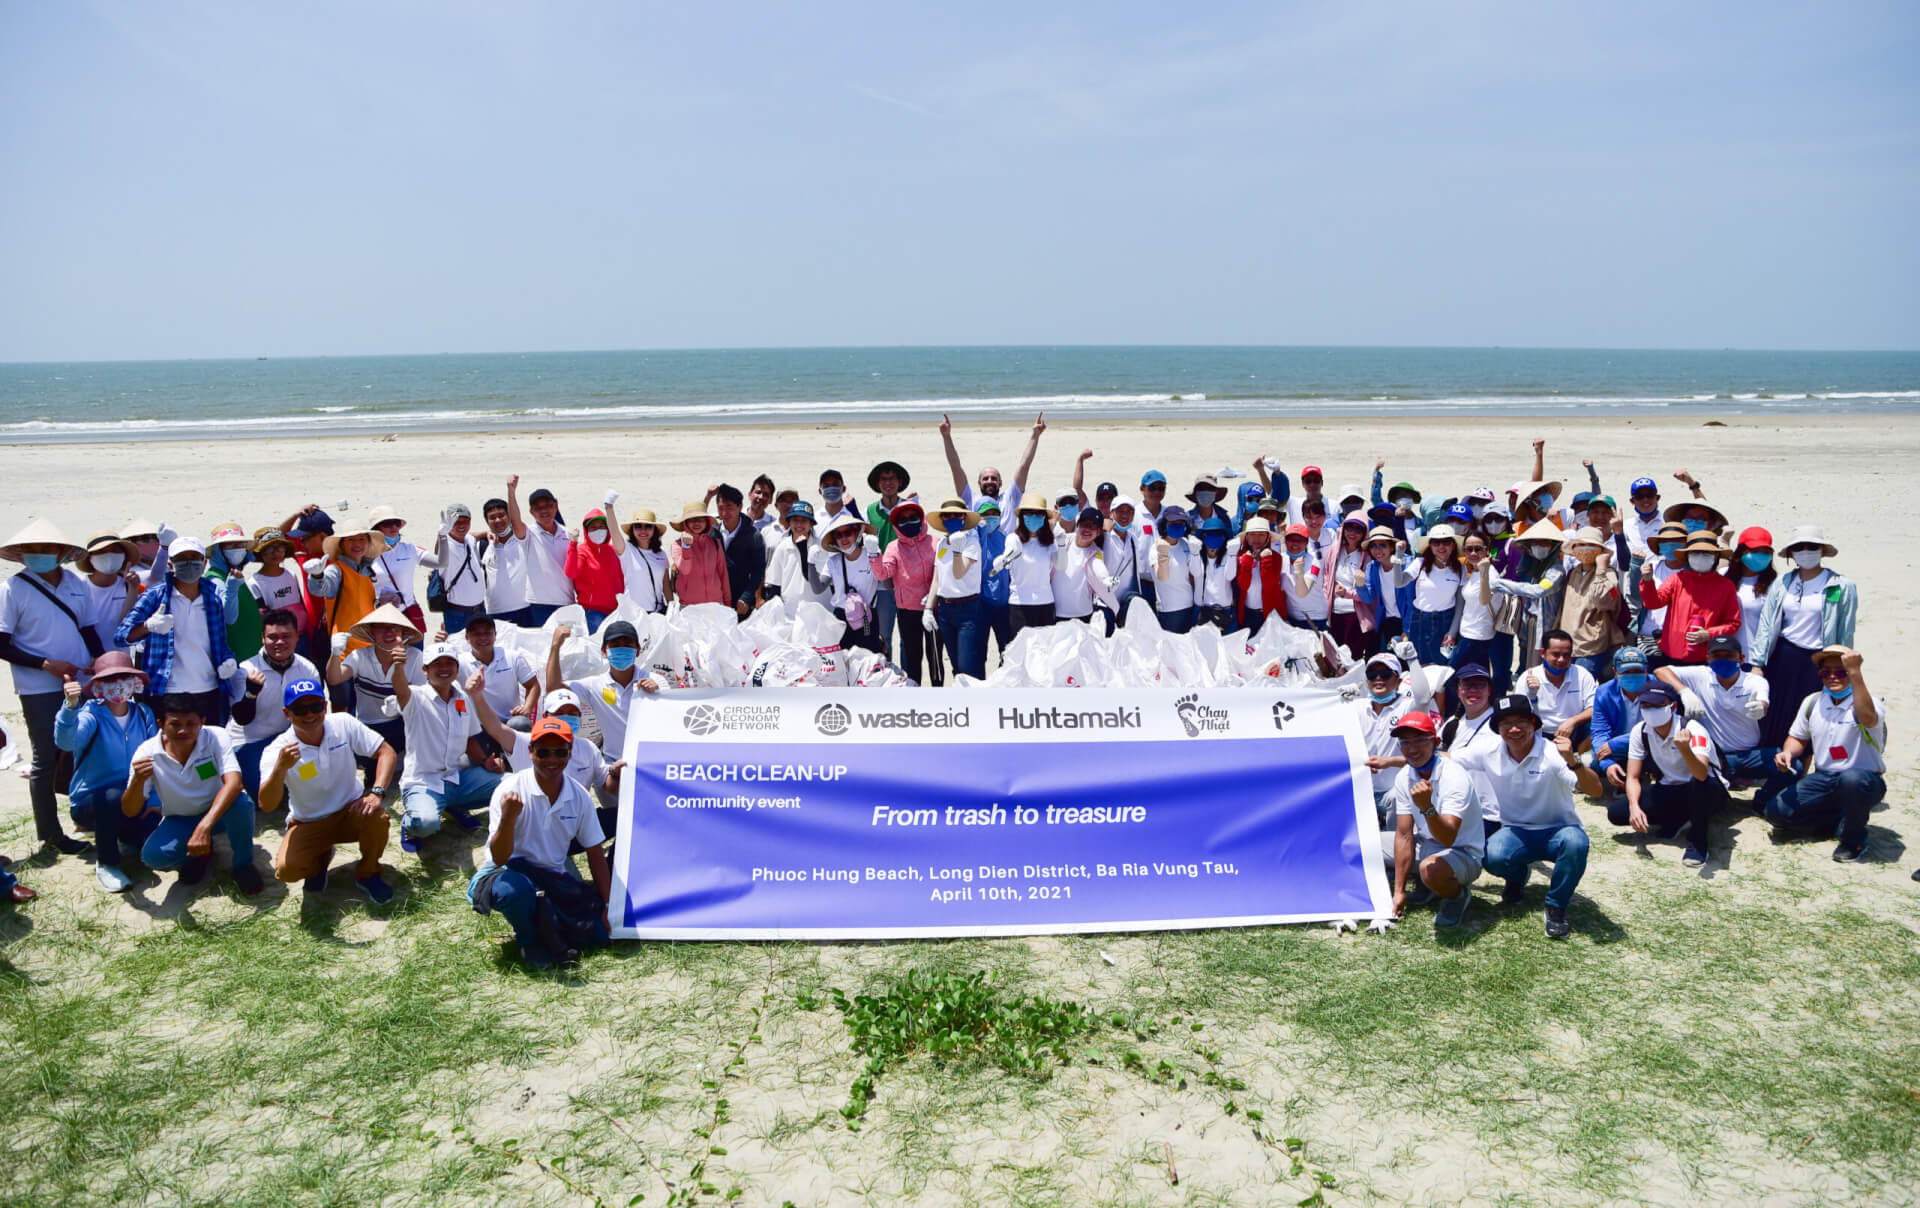 WasteAid and Huhtamaki partnership in Ho Chi Minh City 2021